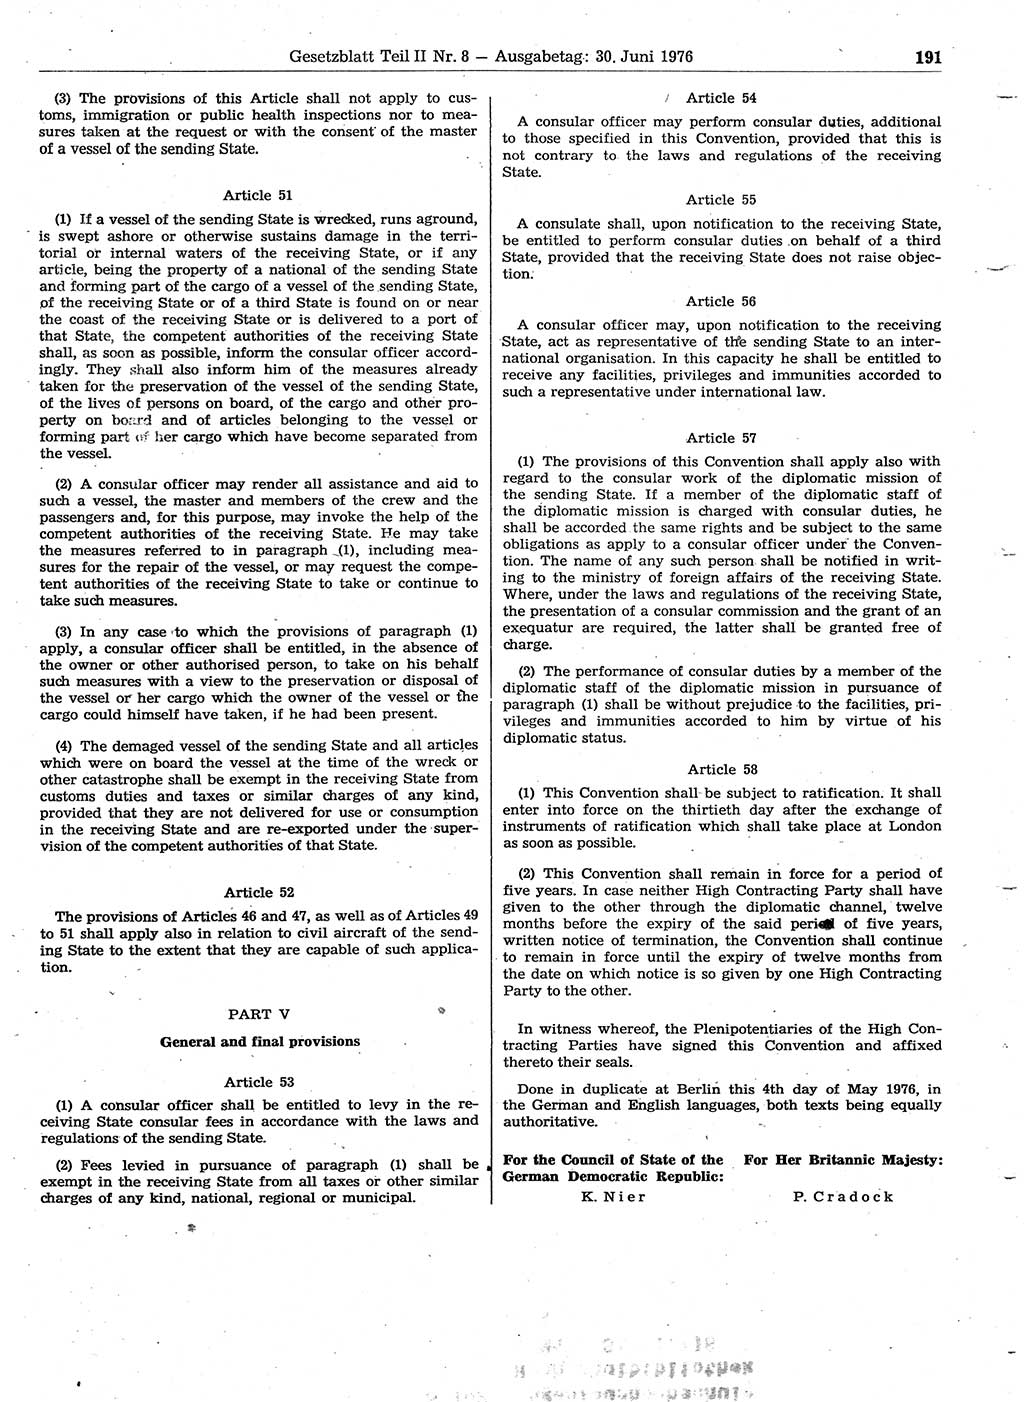 Gesetzblatt (GBl.) der Deutschen Demokratischen Republik (DDR) Teil ⅠⅠ 1976, Seite 191 (GBl. DDR ⅠⅠ 1976, S. 191)